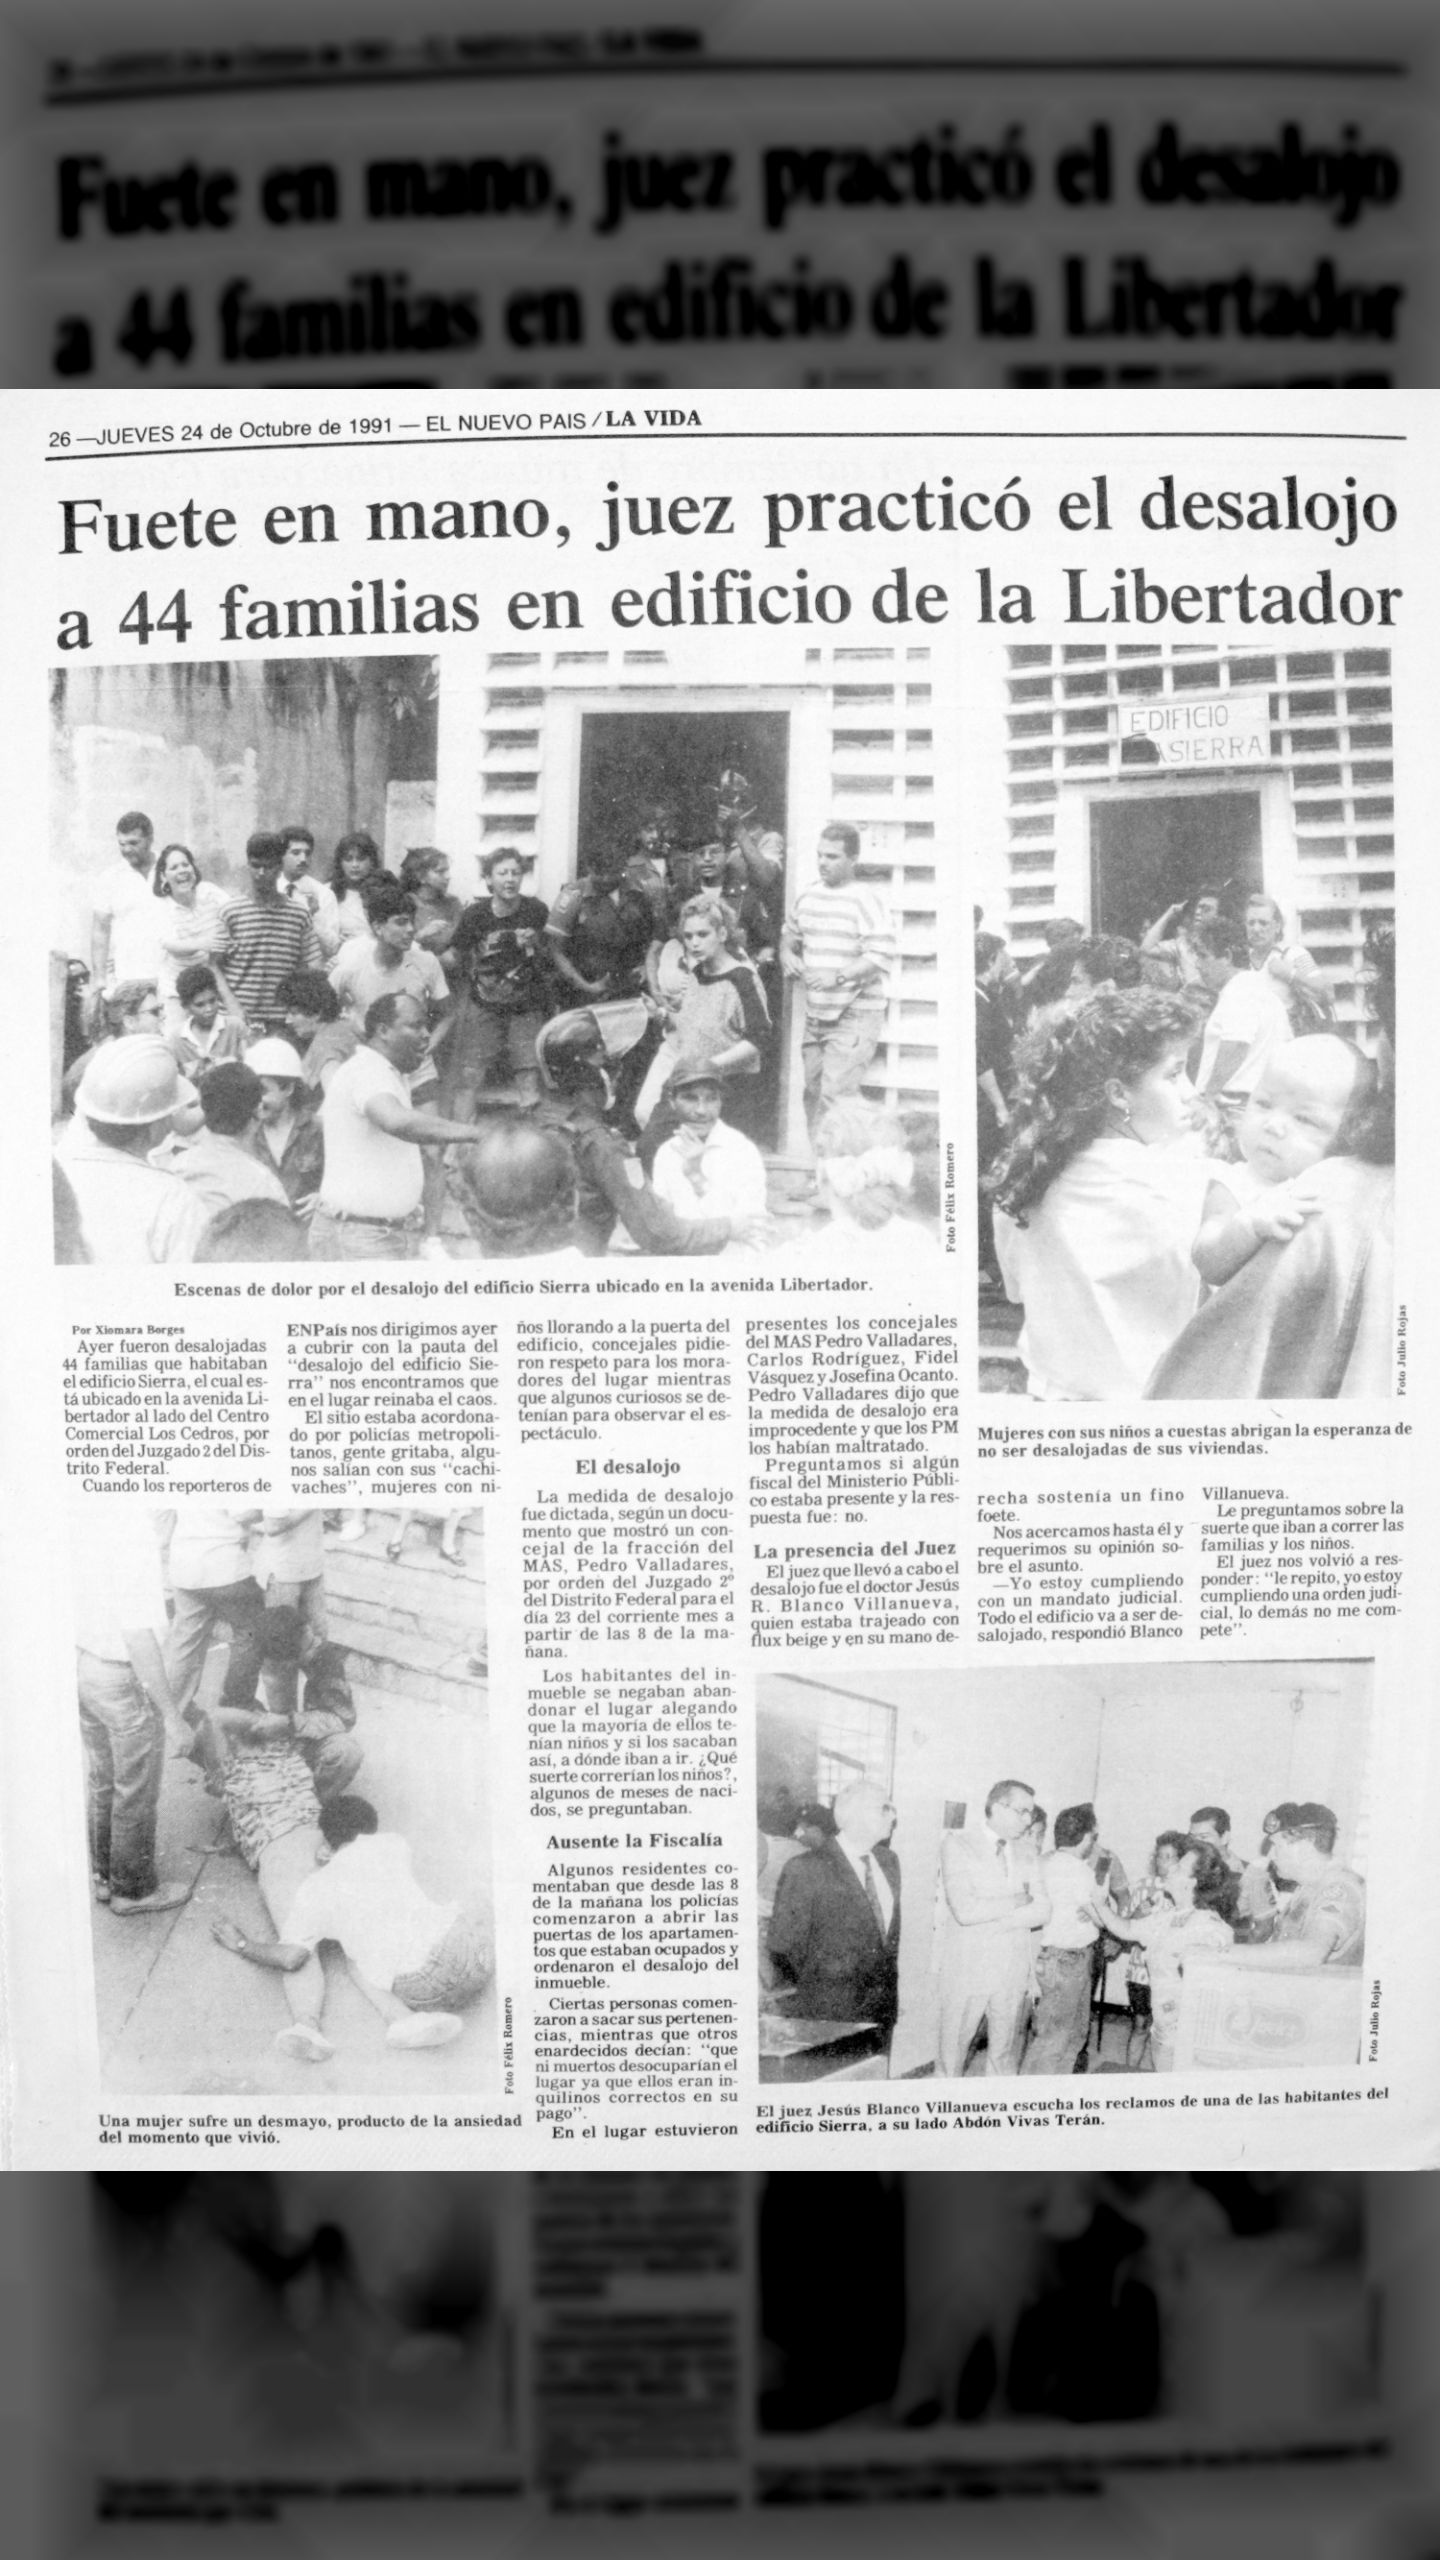 Fuete en mano, juez practicó desalojo a 44 familias en edificio de la Libertador (El Nuevo País, 24 de octubre 1991)